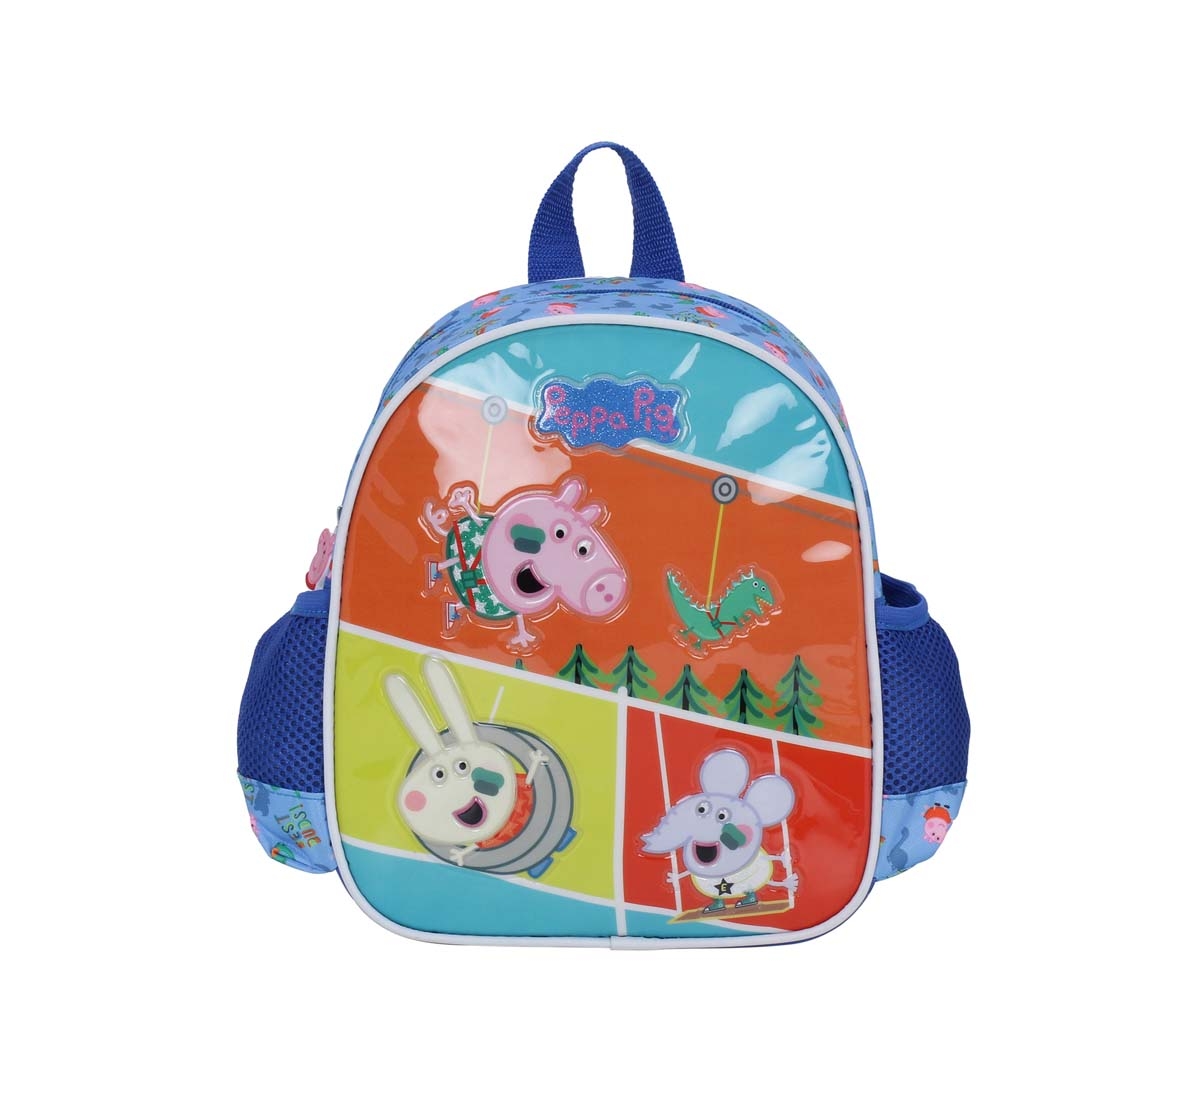 Peppa Pig | Peppa Pig Garden Play 10 Backpack Bags for Kids age 3Y+ 